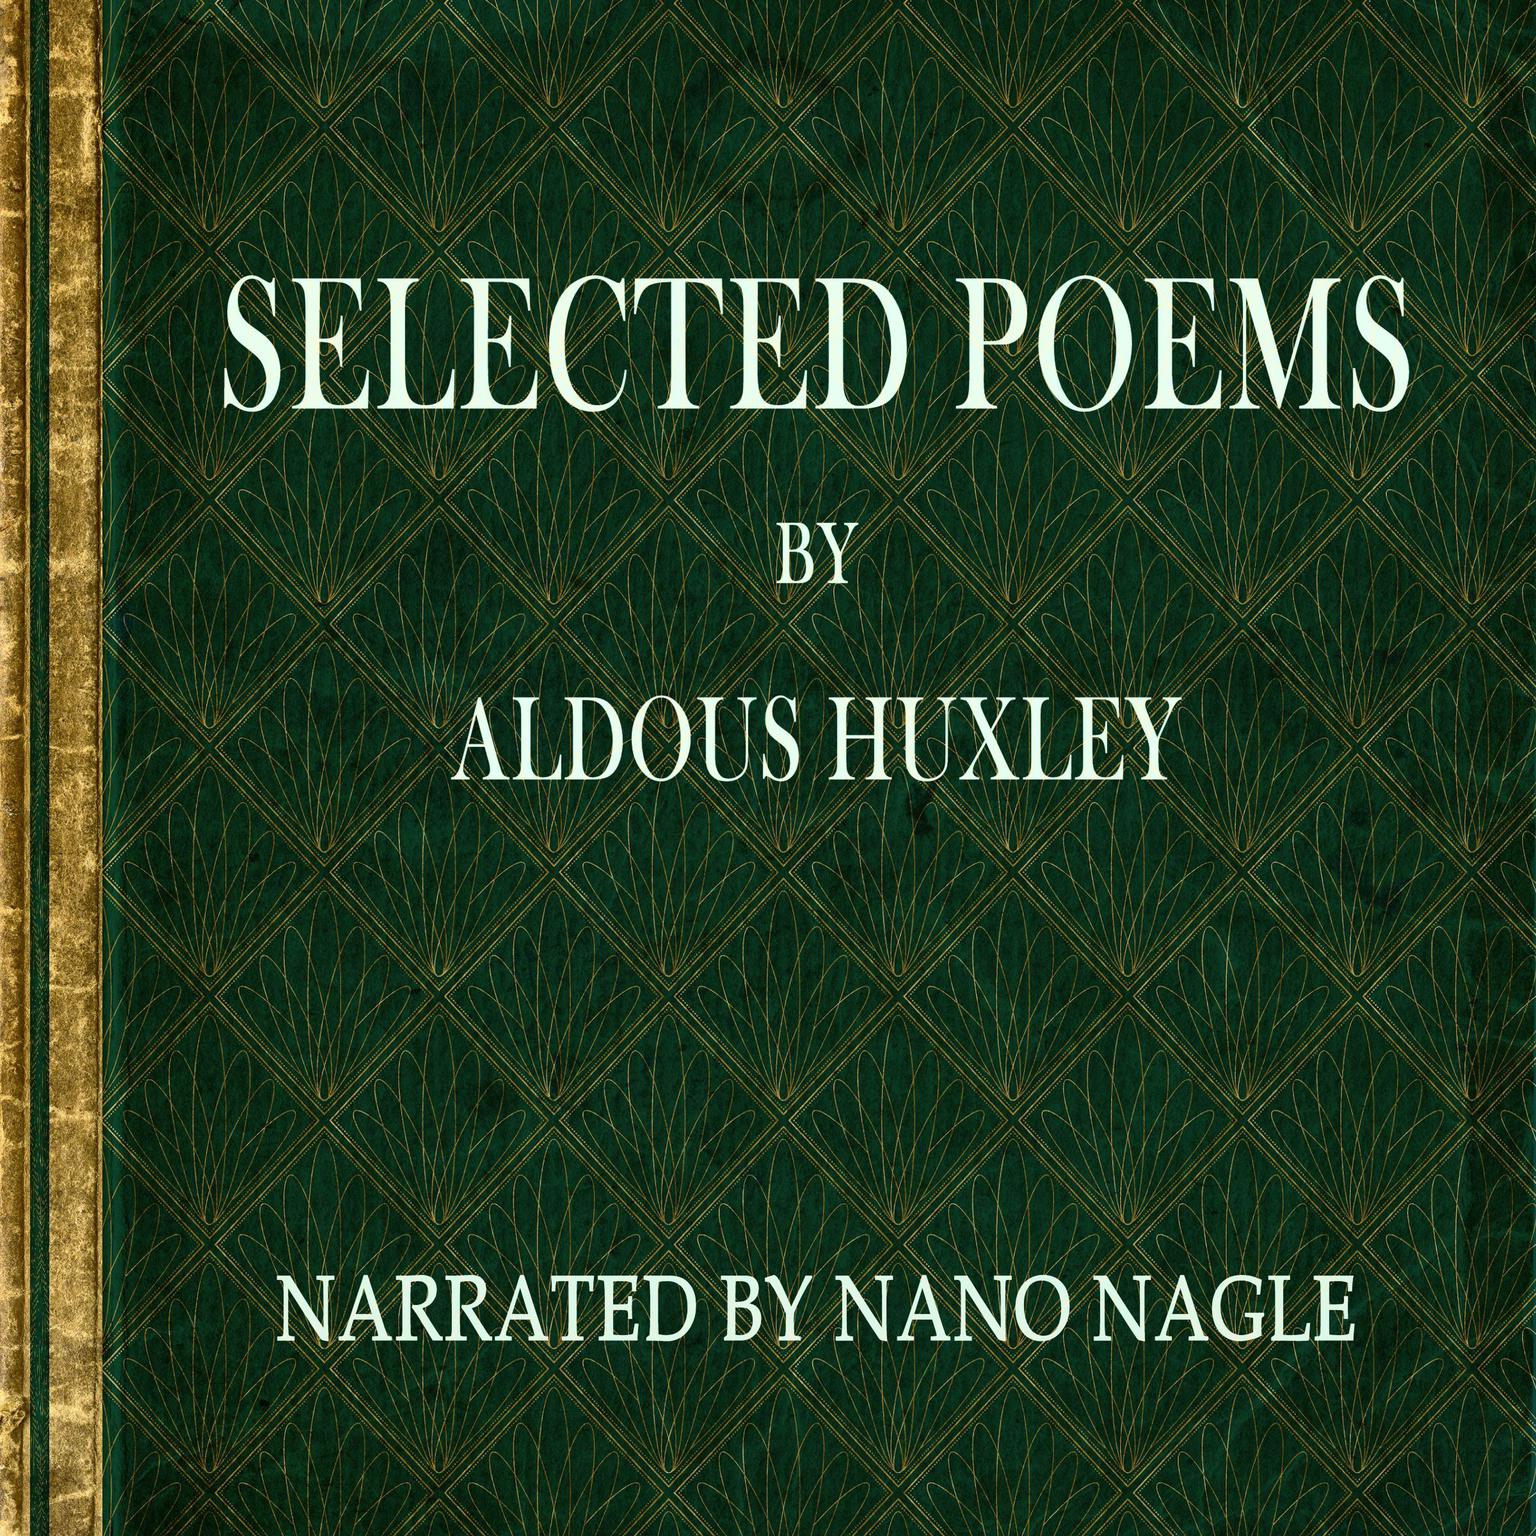 Selected Poems Aldous Huxley Audiobook, by Aldous Huxley